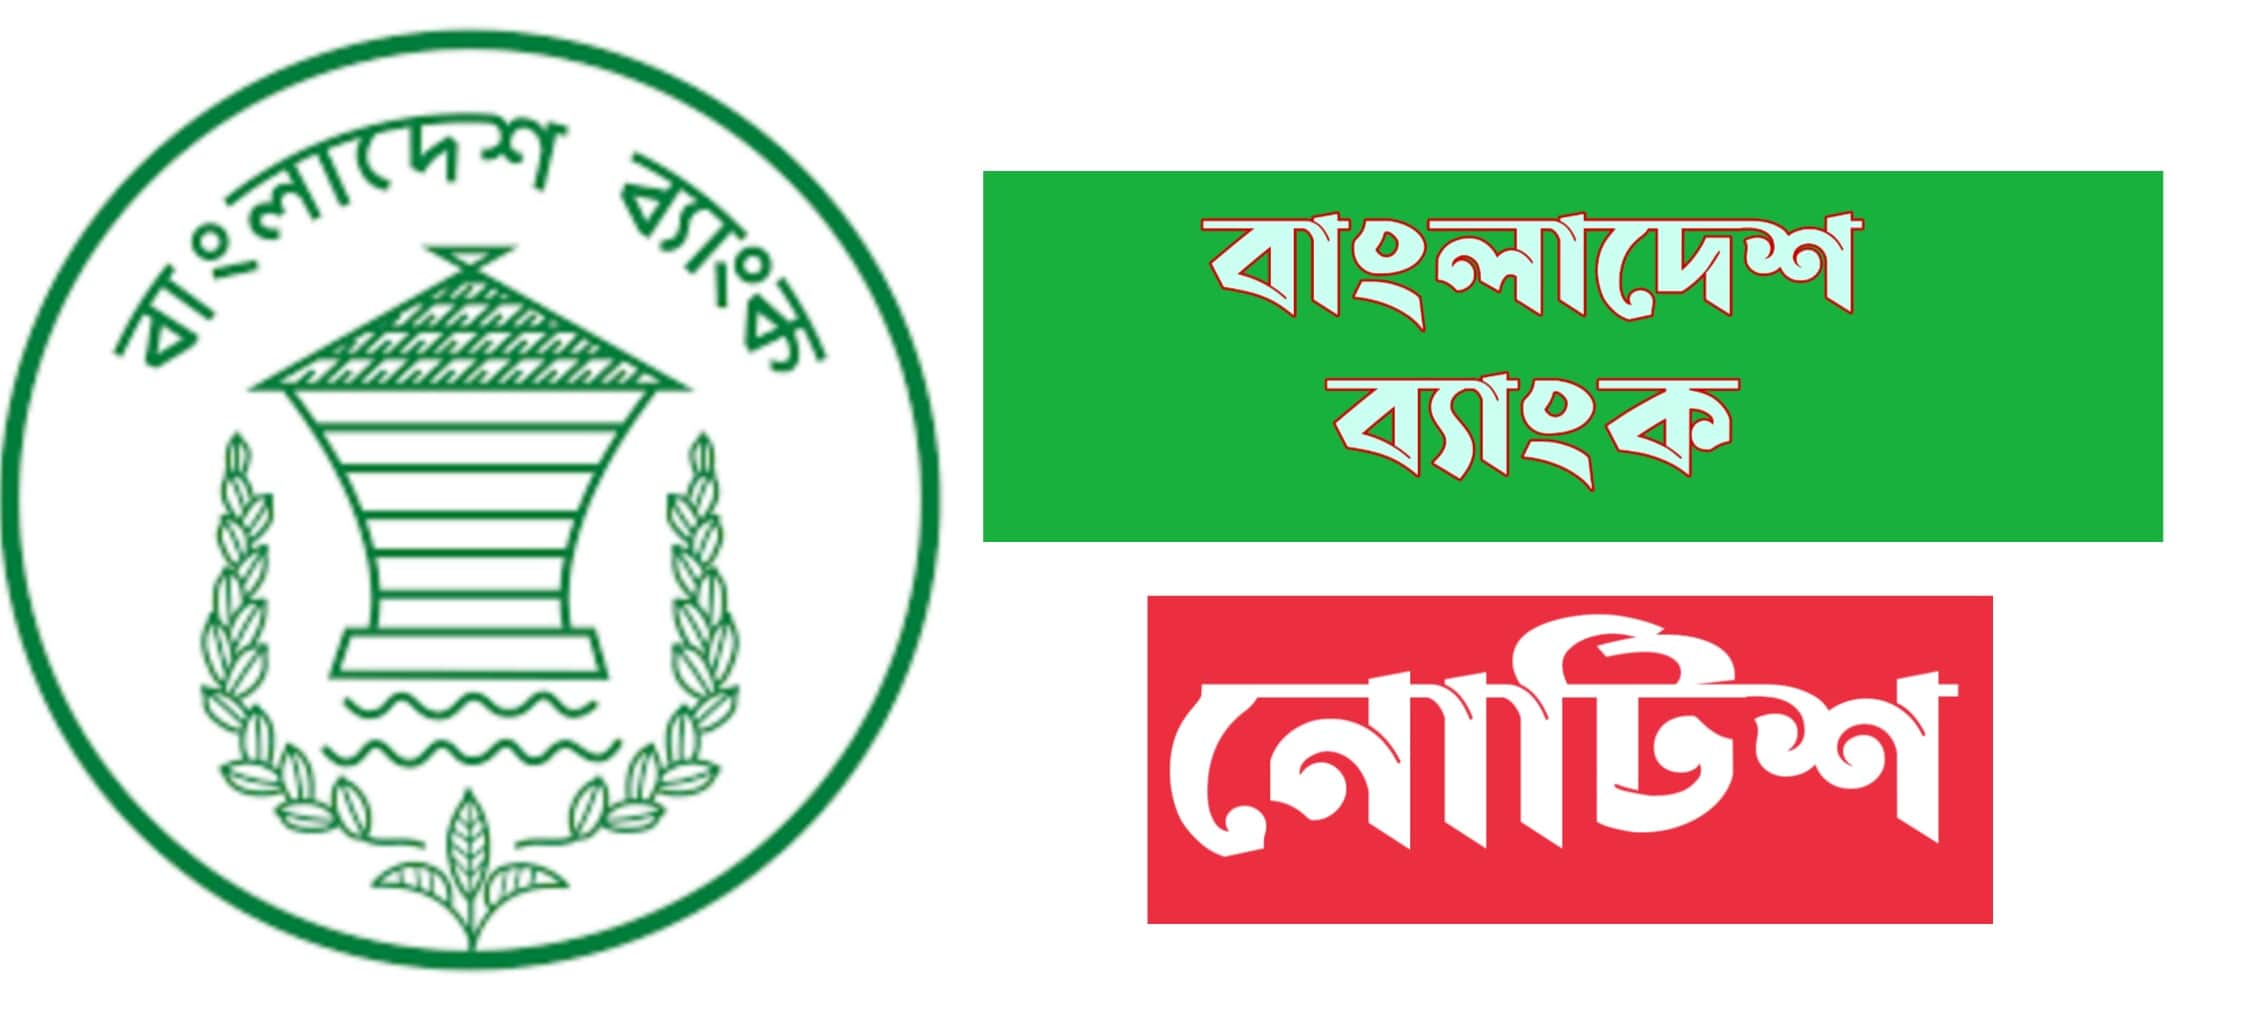 বাংলাদেশ ব্যাংক নোটিশ বোর্ড ২০২১ | Bangladesh Bank Notice